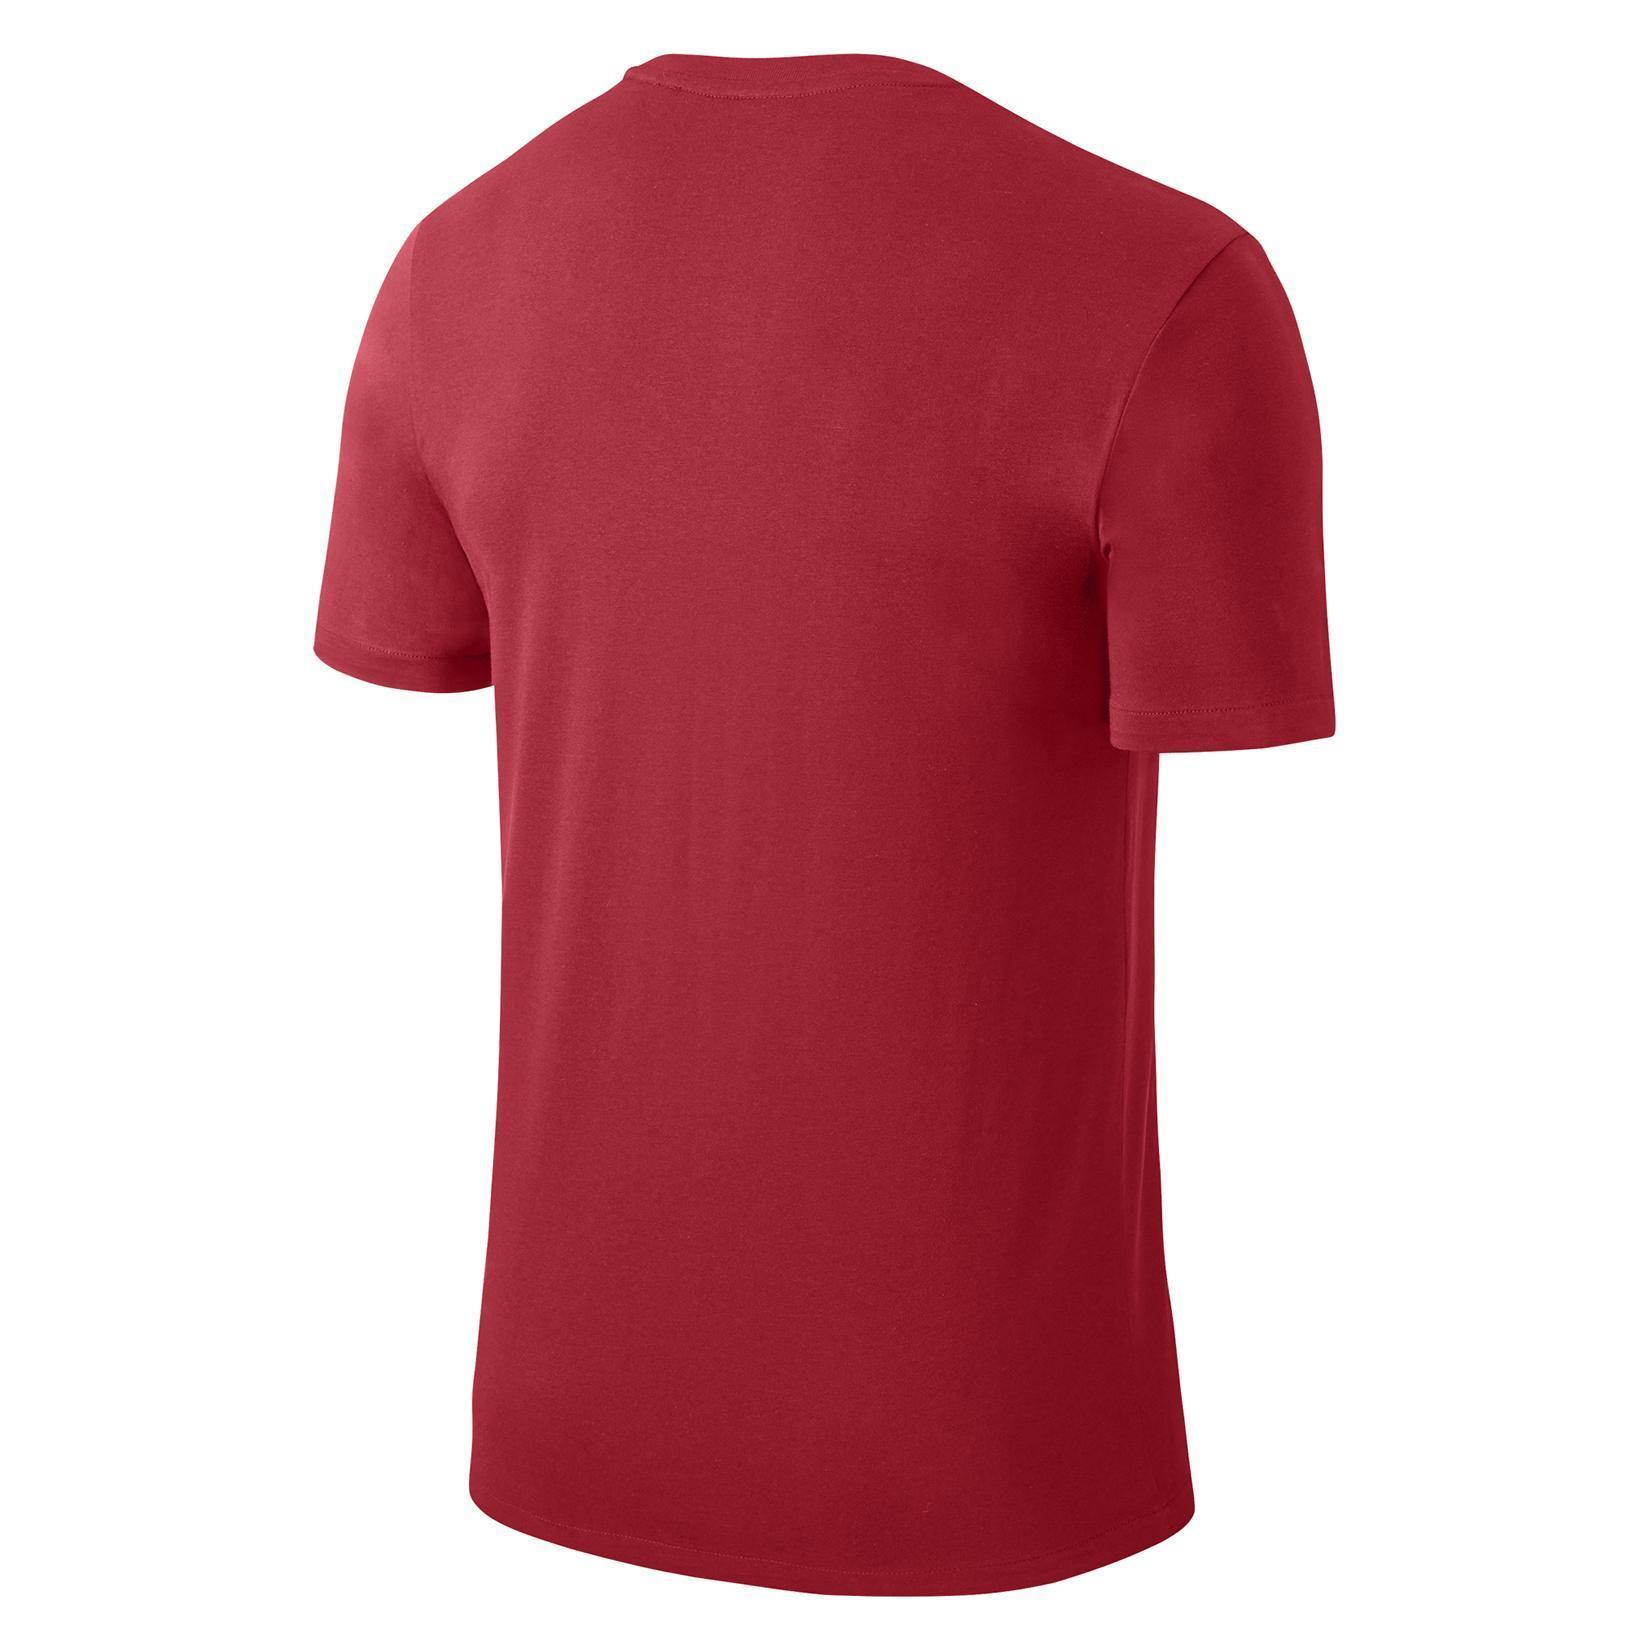 Nike Team Club Cotton T-shirt - Kitlocker.com